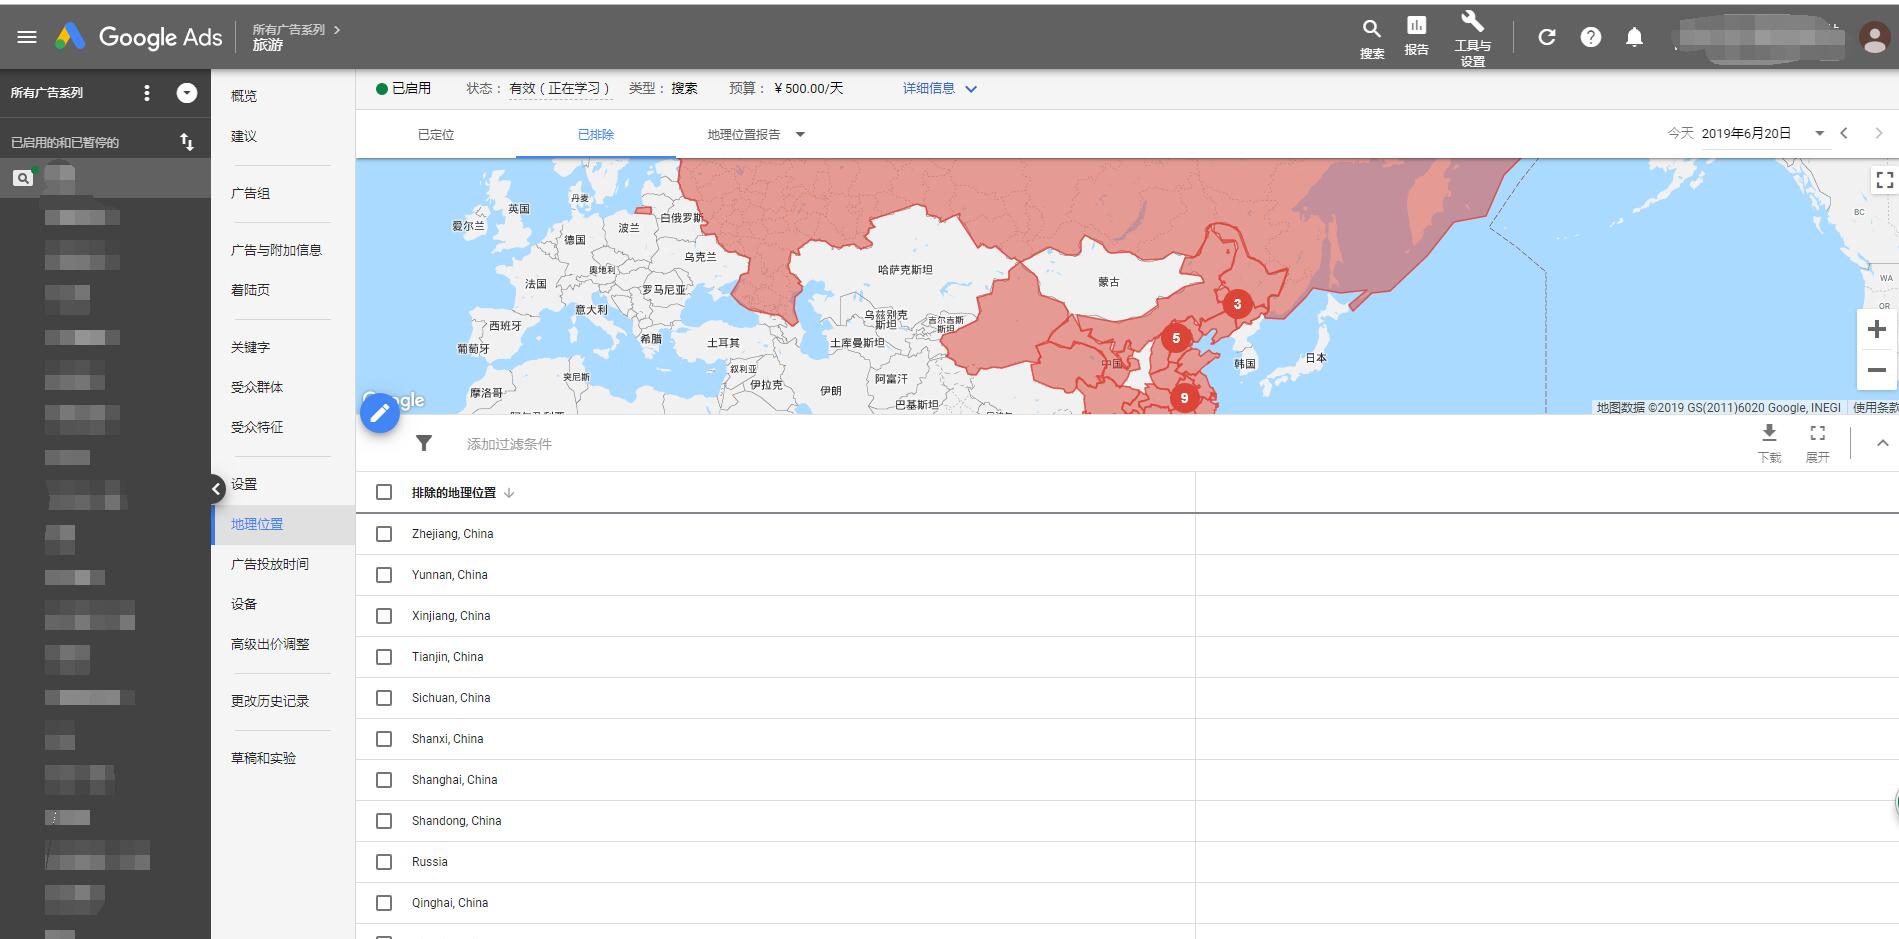 为何陕西的Google ads广告客户投放全球而屏蔽中国除陕西之外的区域呢？